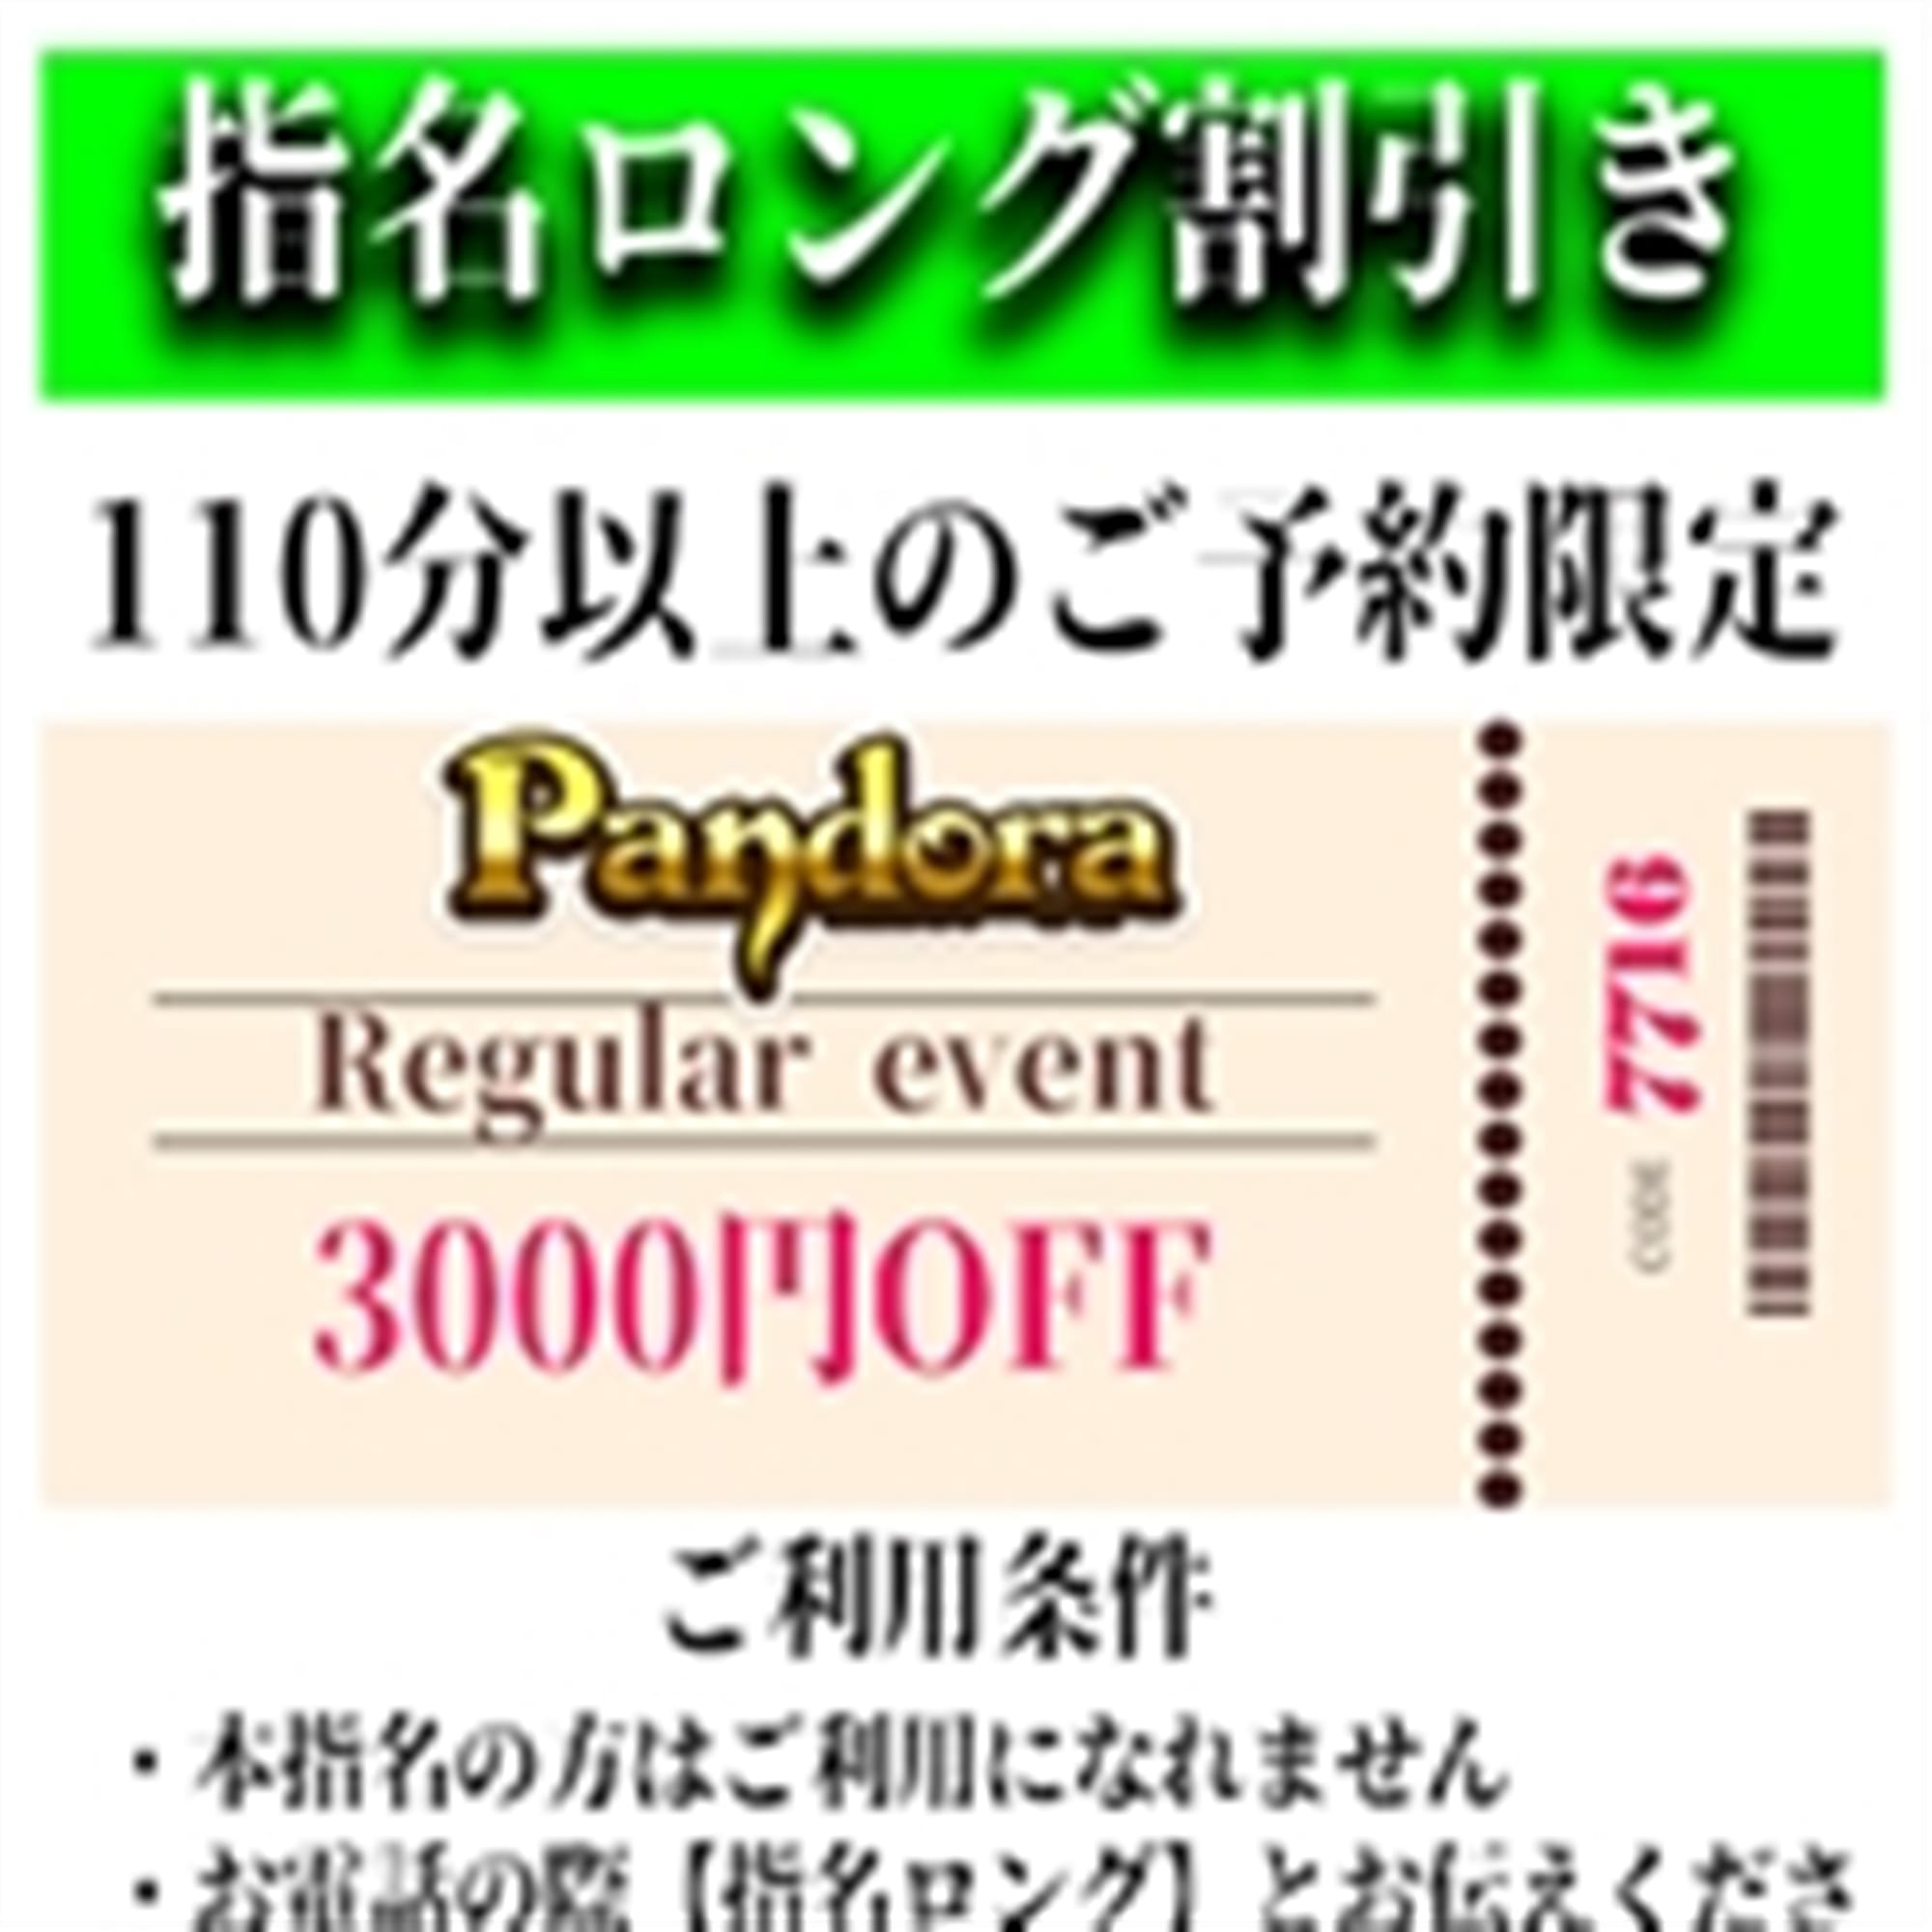 「ご指名のお客様も遊べるロングコース割引」04/26(金) 10:04 | Pandora(パンドラ)新潟のお得なニュース